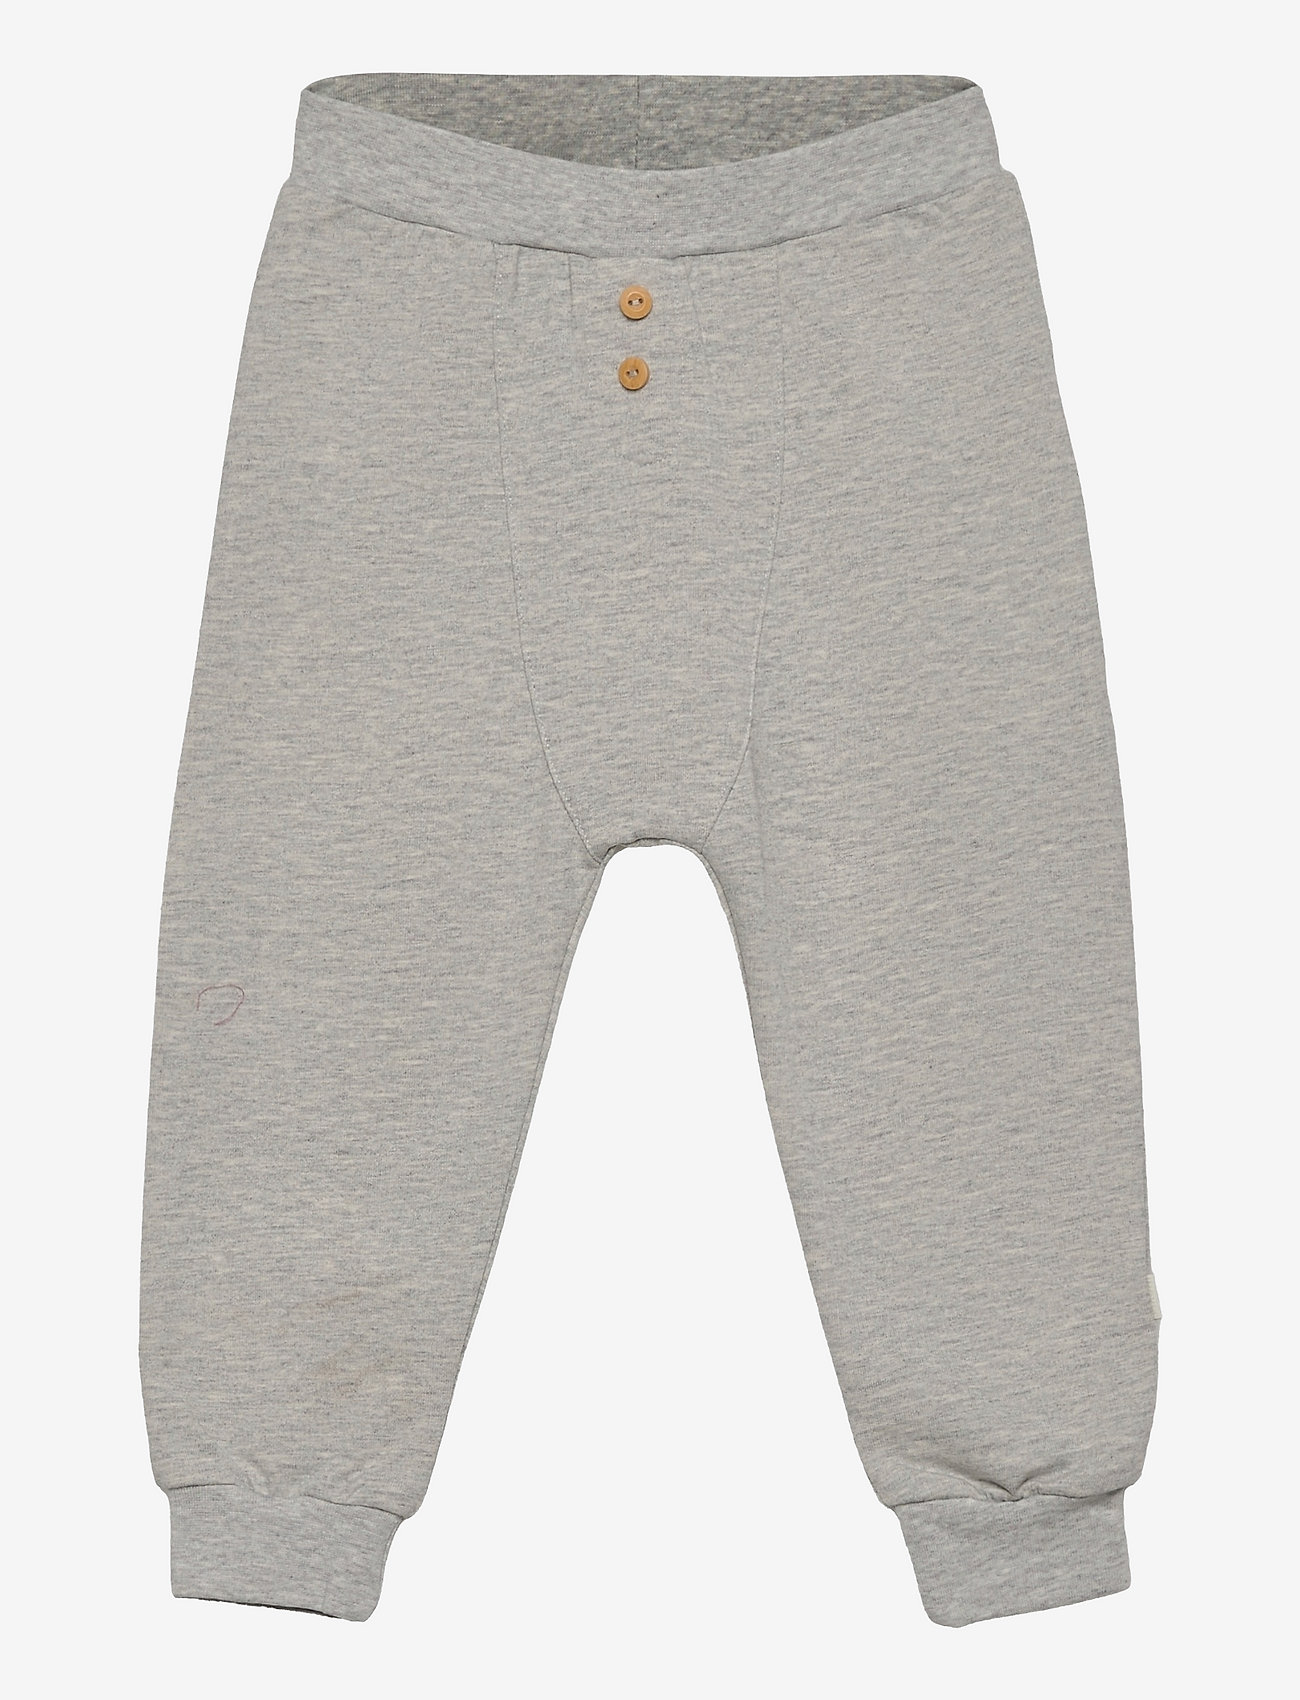 Fixoni - Pants - Unisex - pantalon pour bébé - grey melange - 0